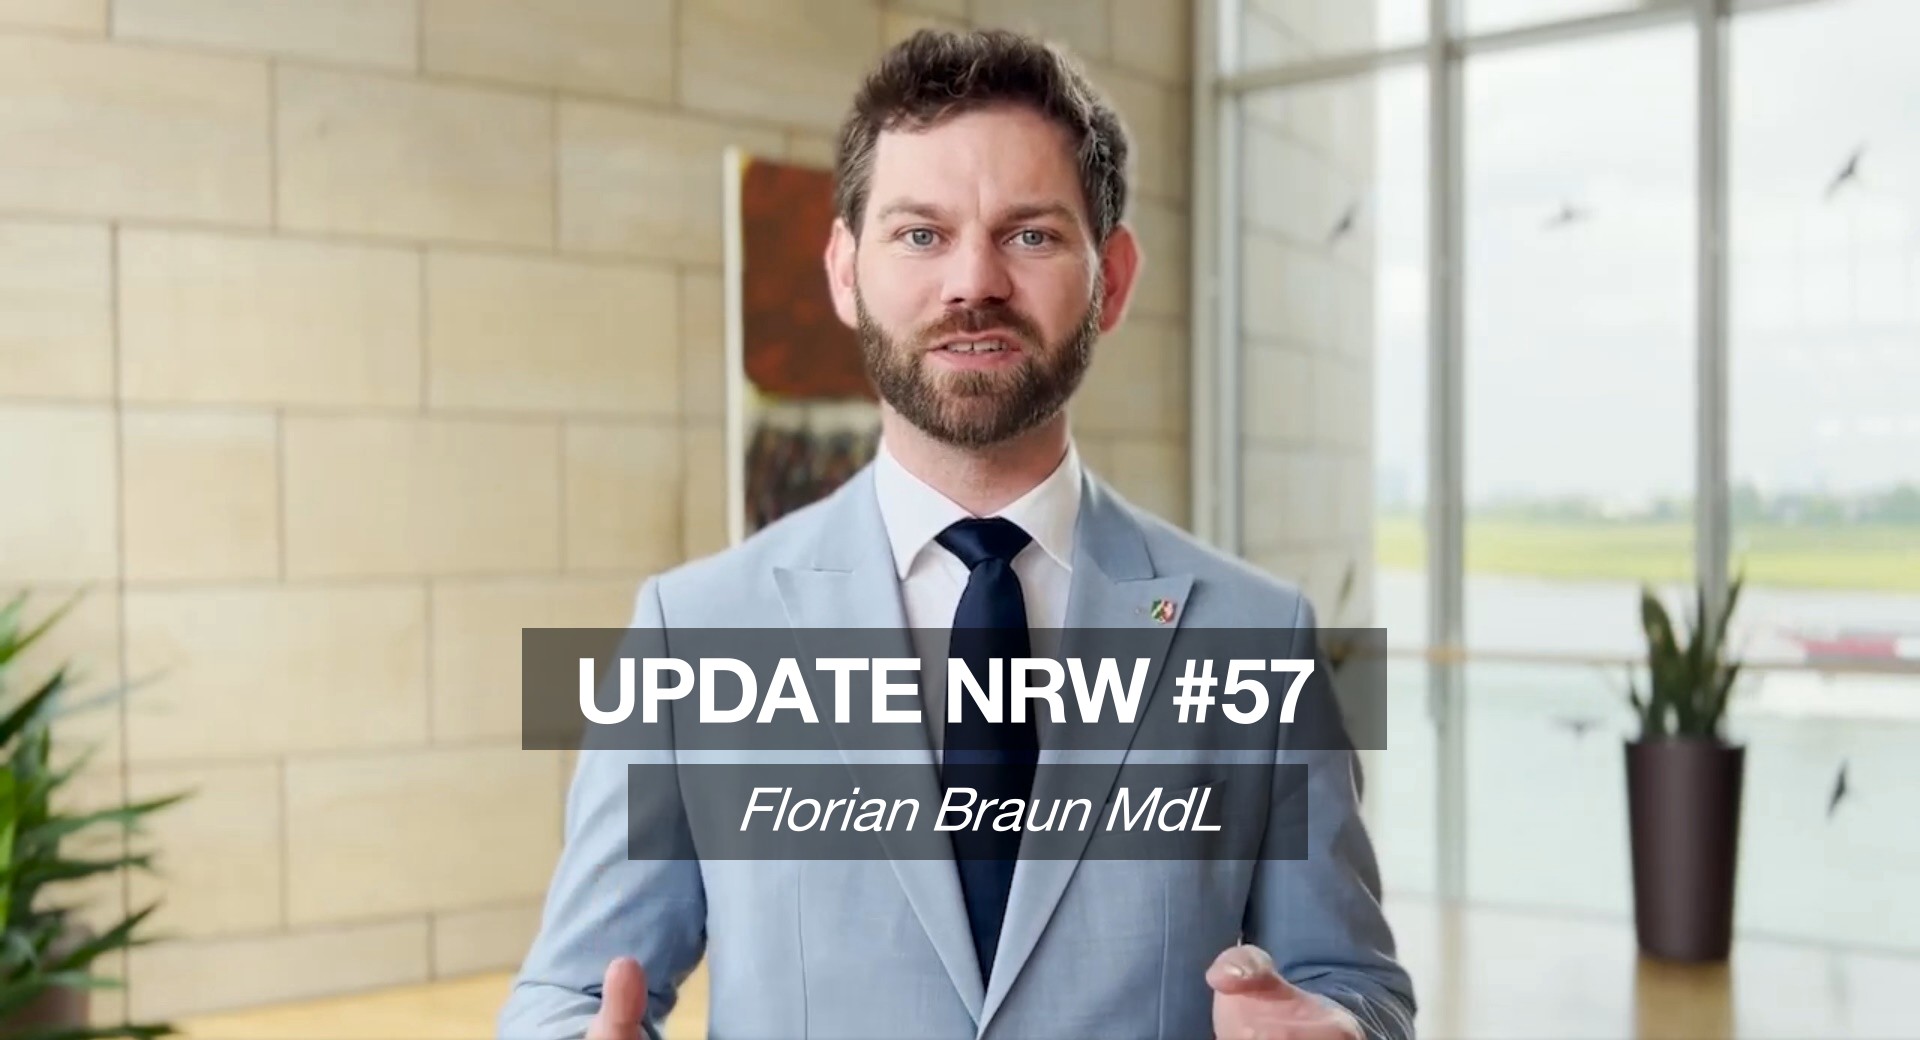 Florian Braun MdL: Update NRW #57